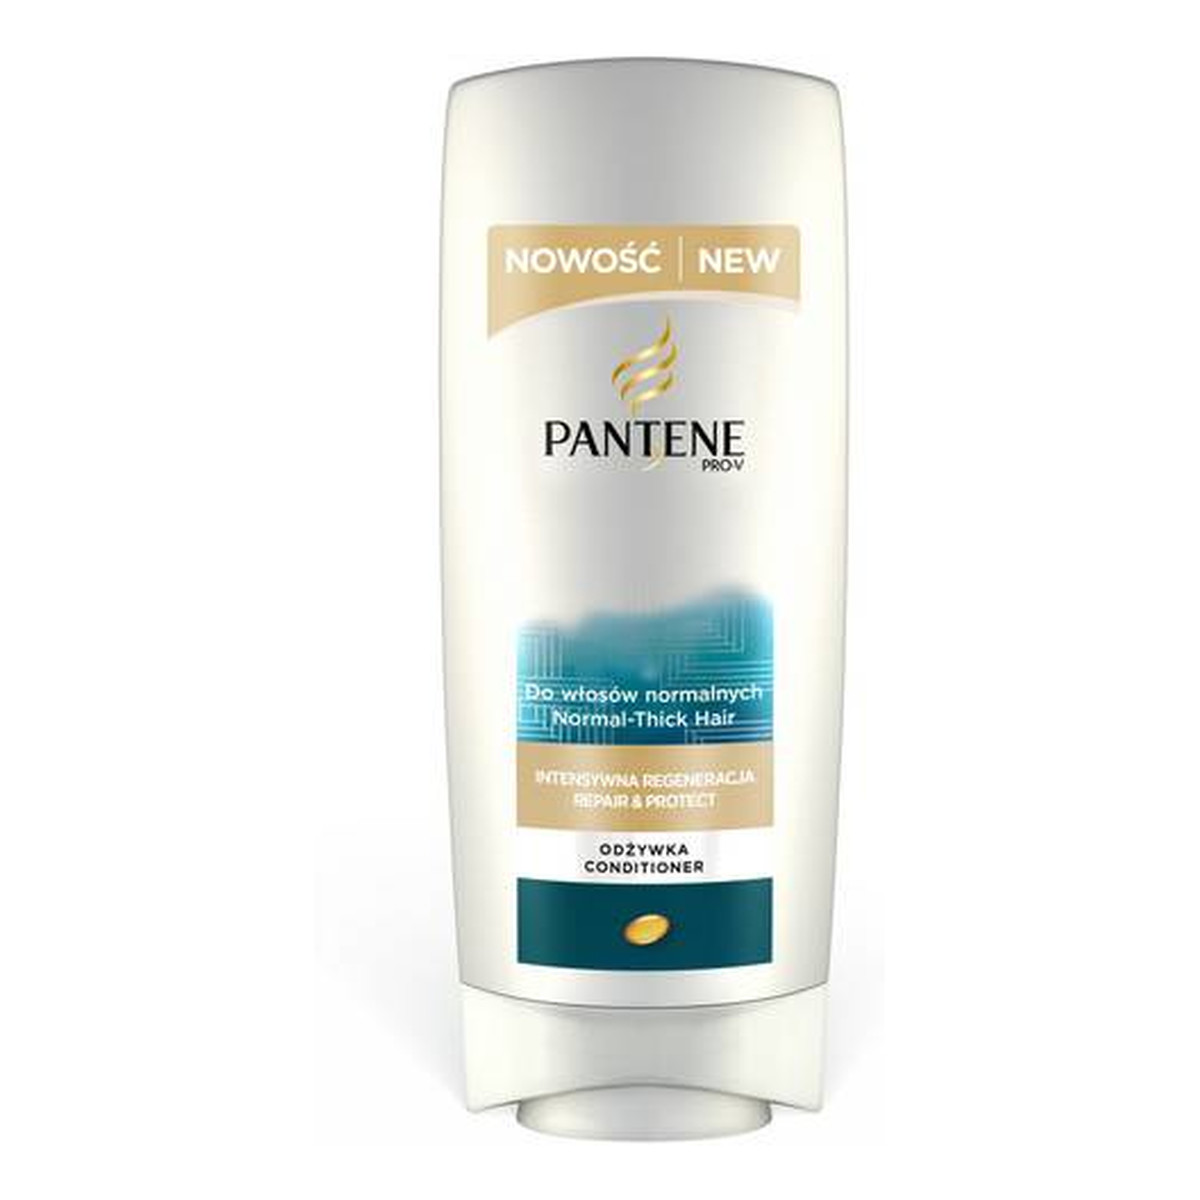 Pantene Pro-V Intensywna Regeneracja Odżywka Do Włosów Normalnych 400ml